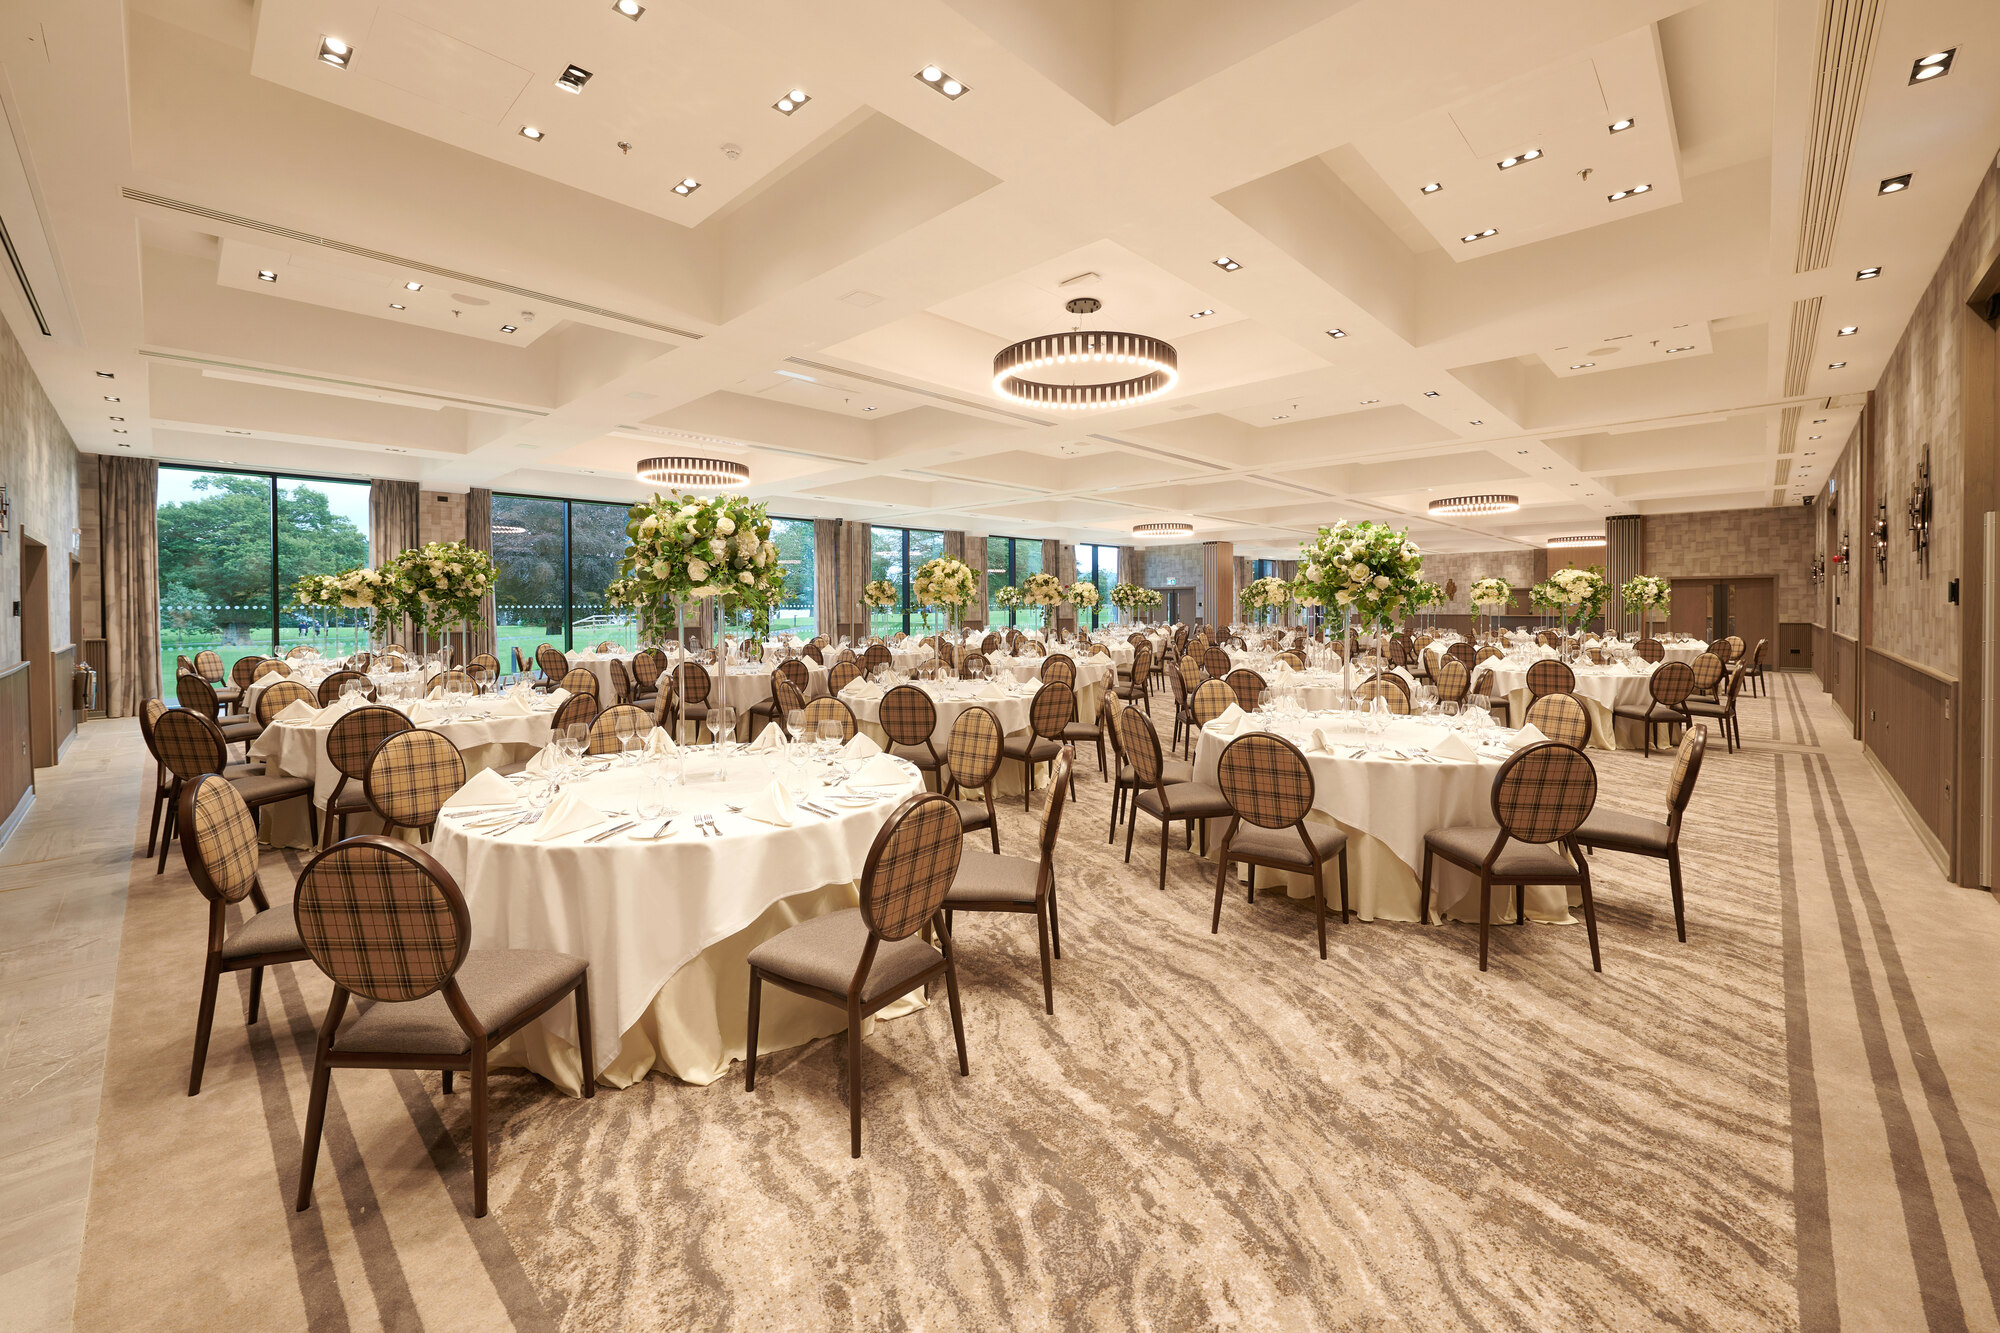 Loch Lomond Suite Table Set Up 400 Guest Wedding Venue